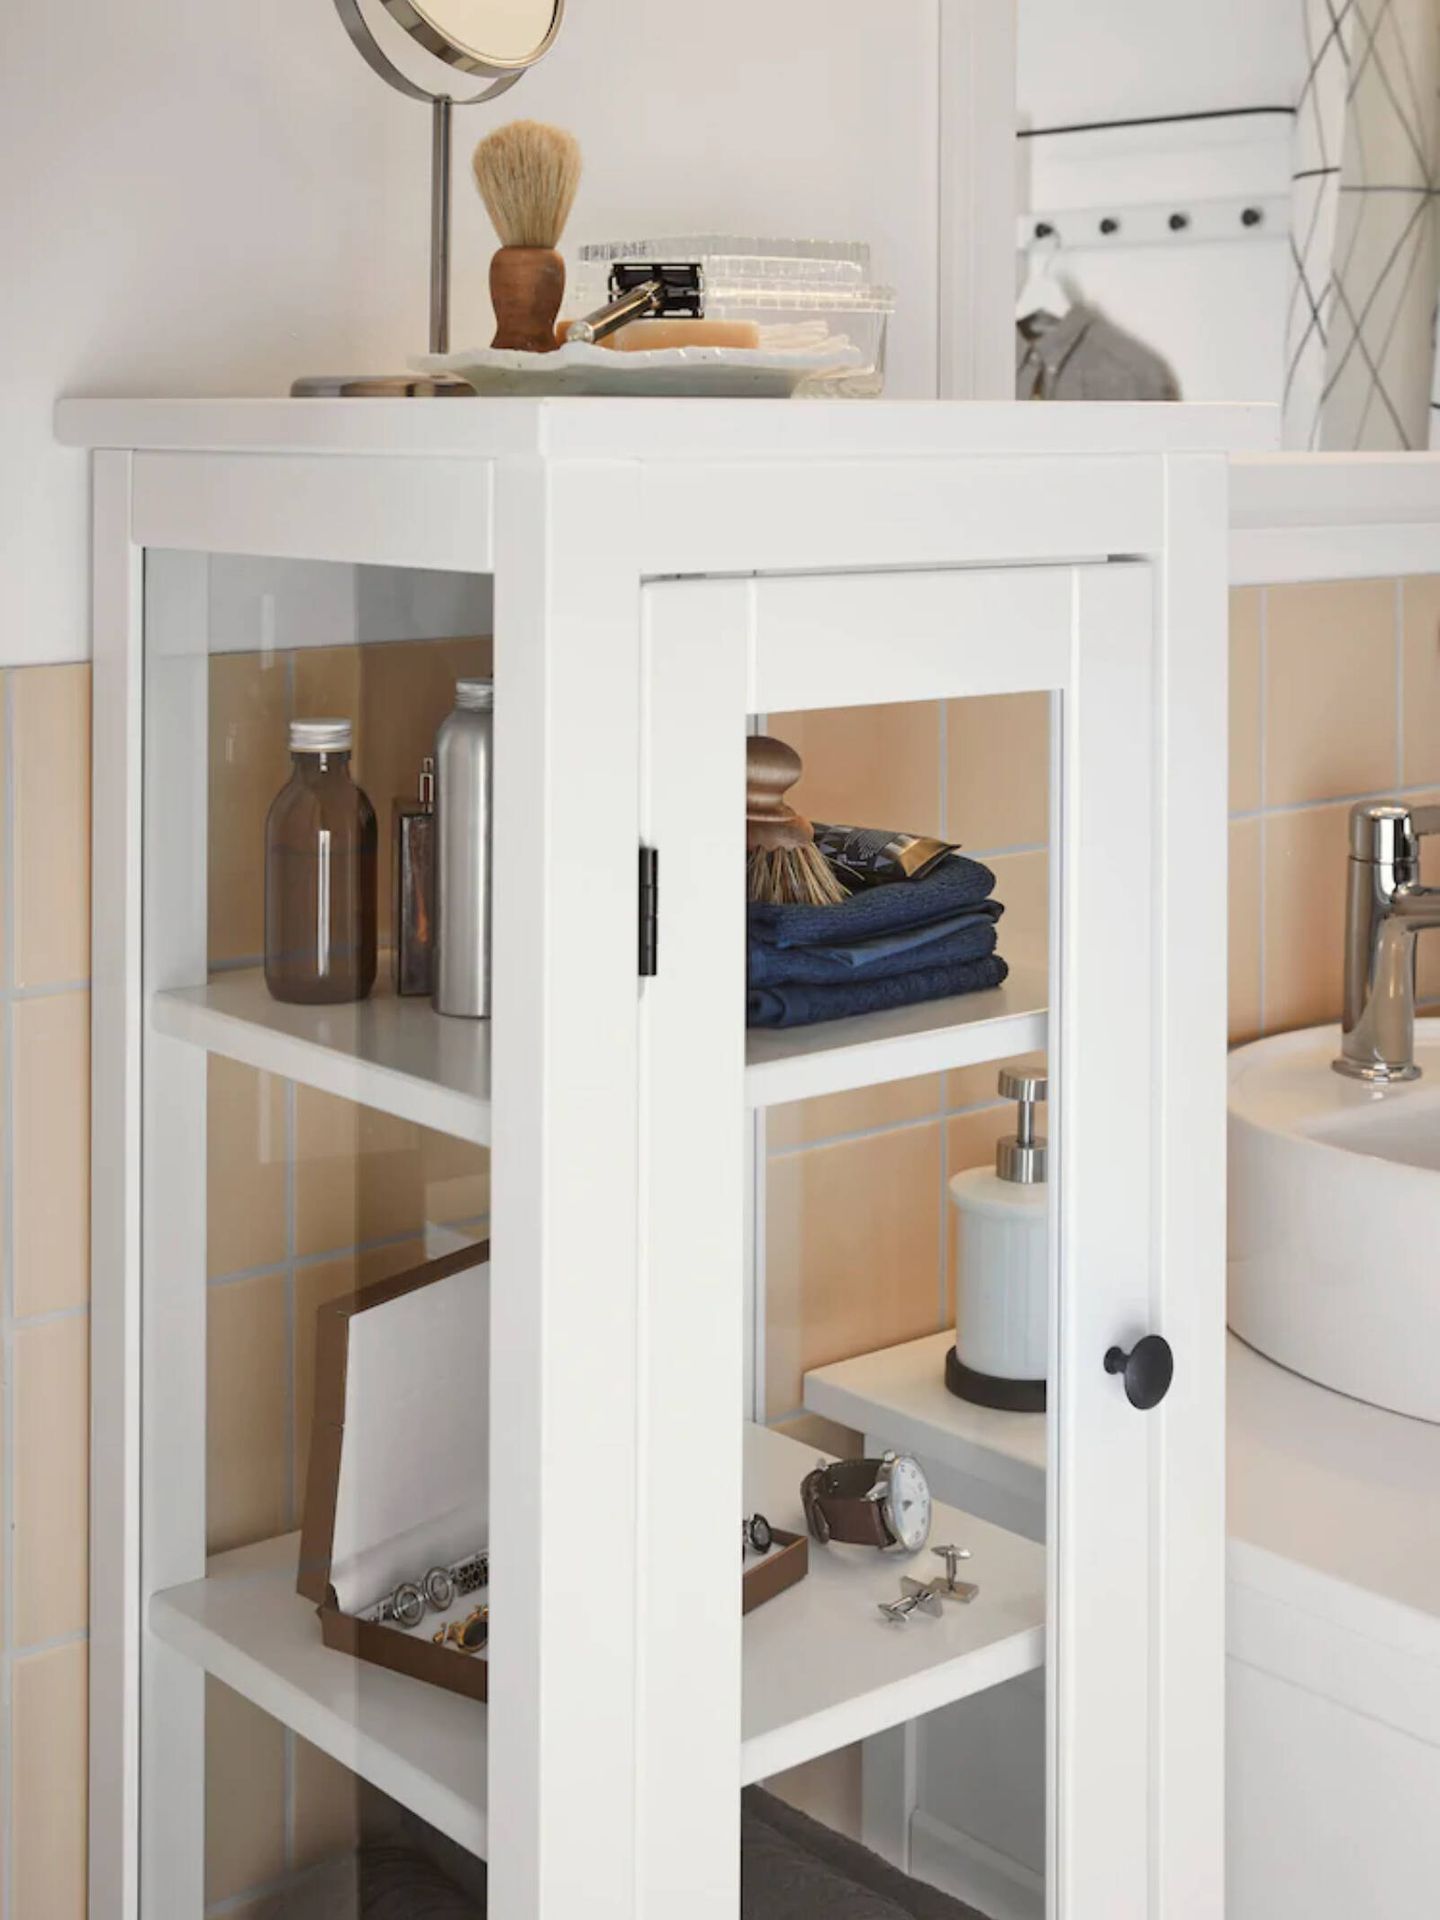 Ideas de Ikea para un baño genial. (Cortesía)